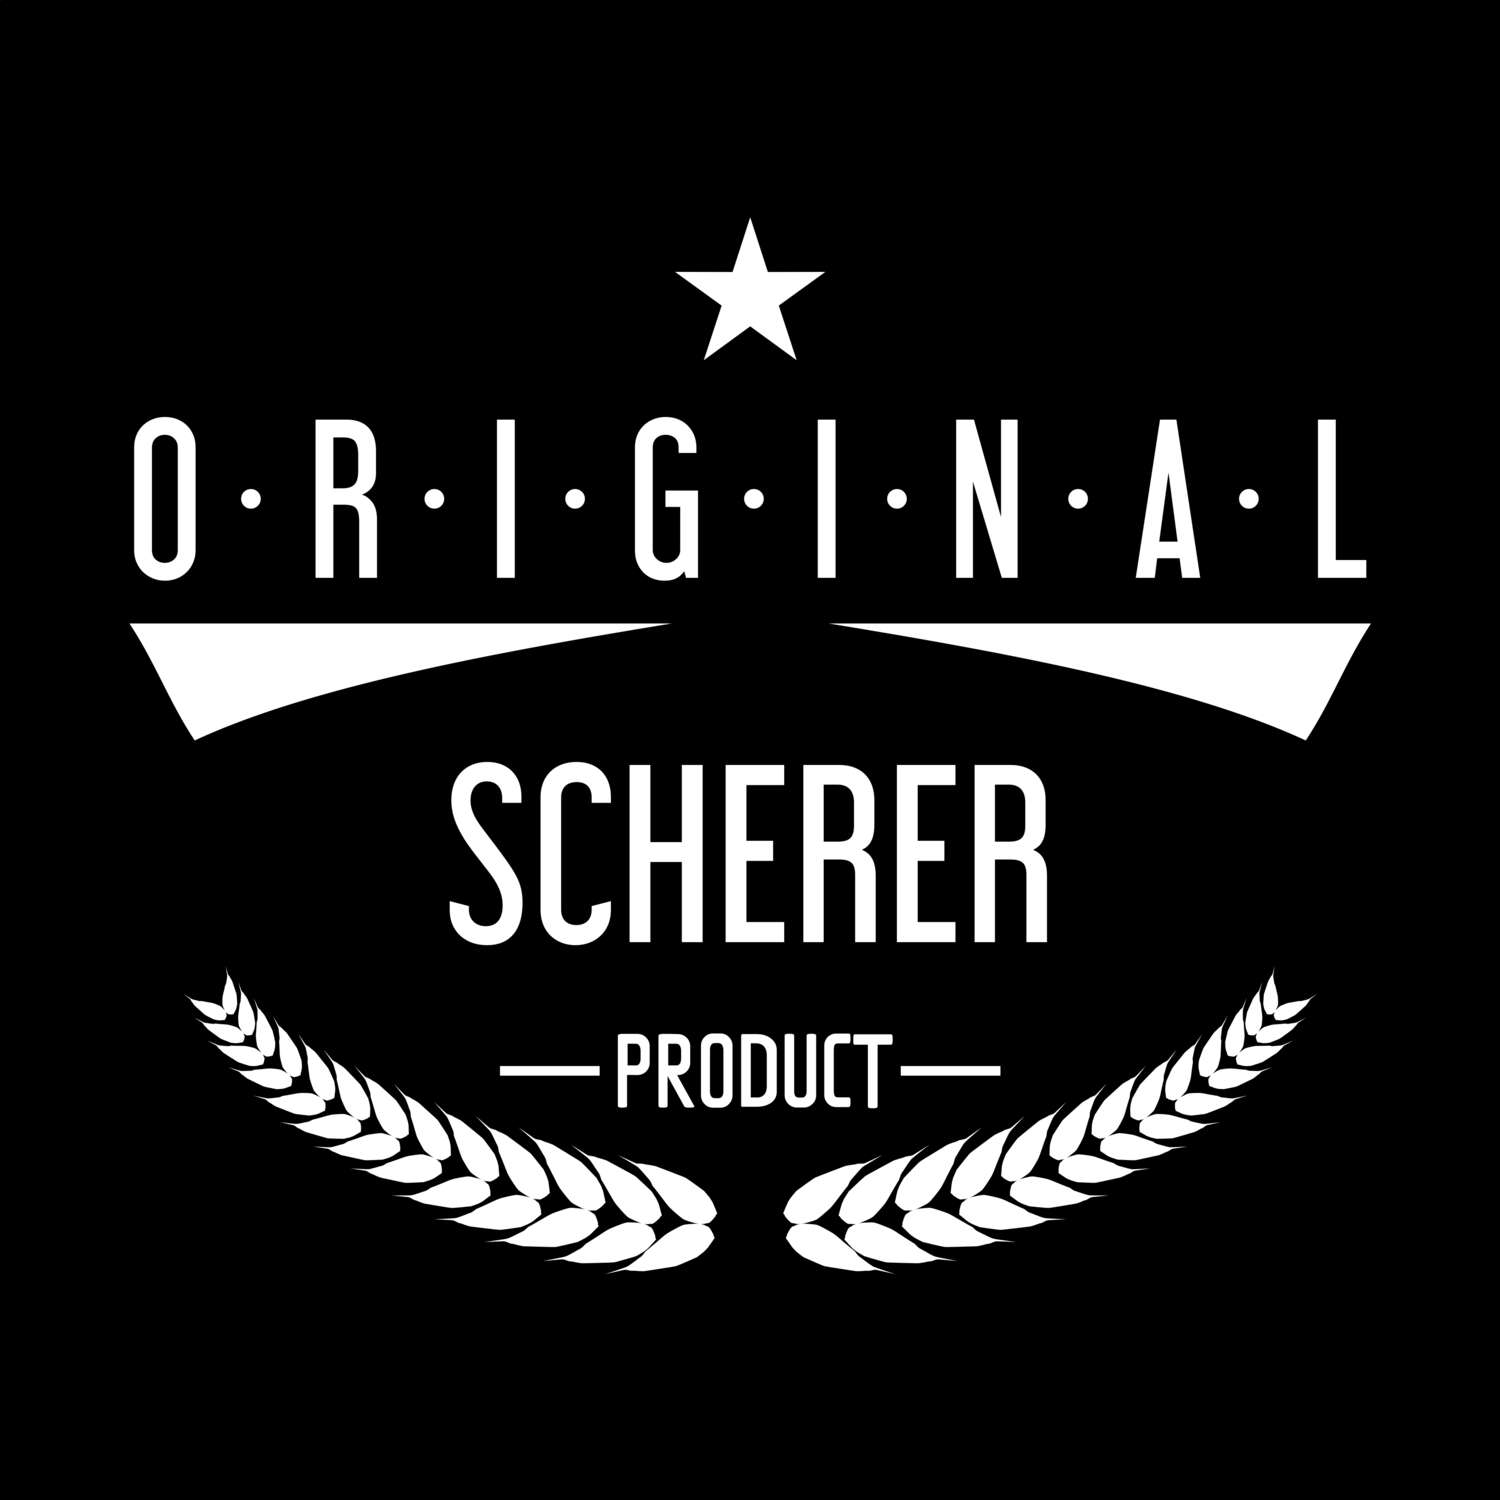 Scherer T-Shirt »Original Product«